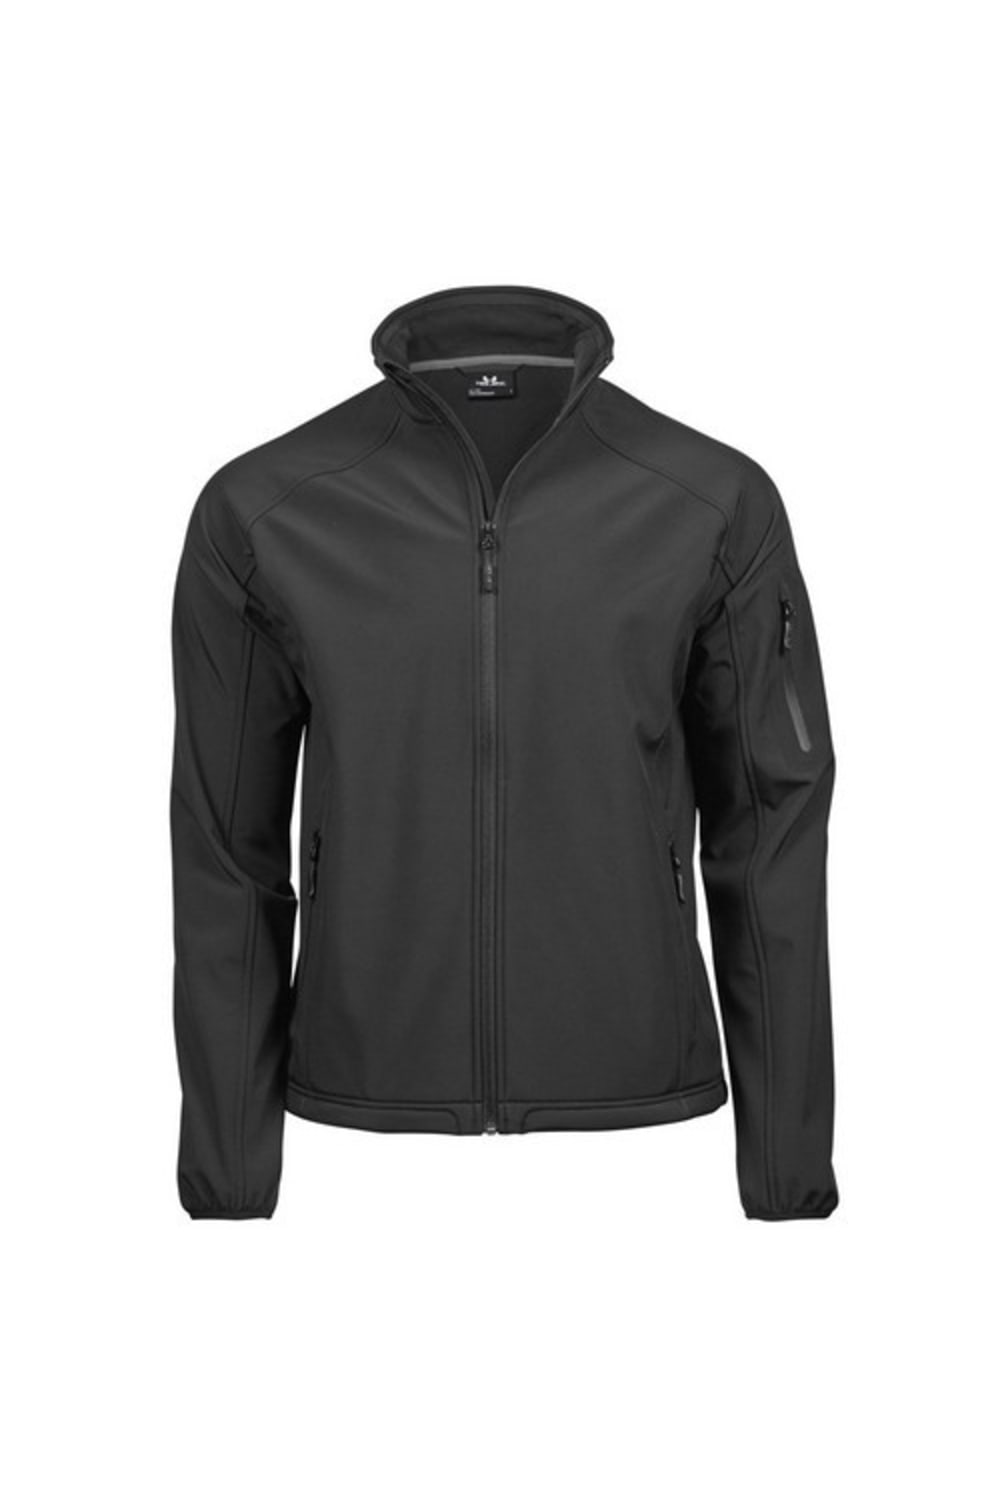 Tee Jays Mens Performance Softshell Jacket (Black)